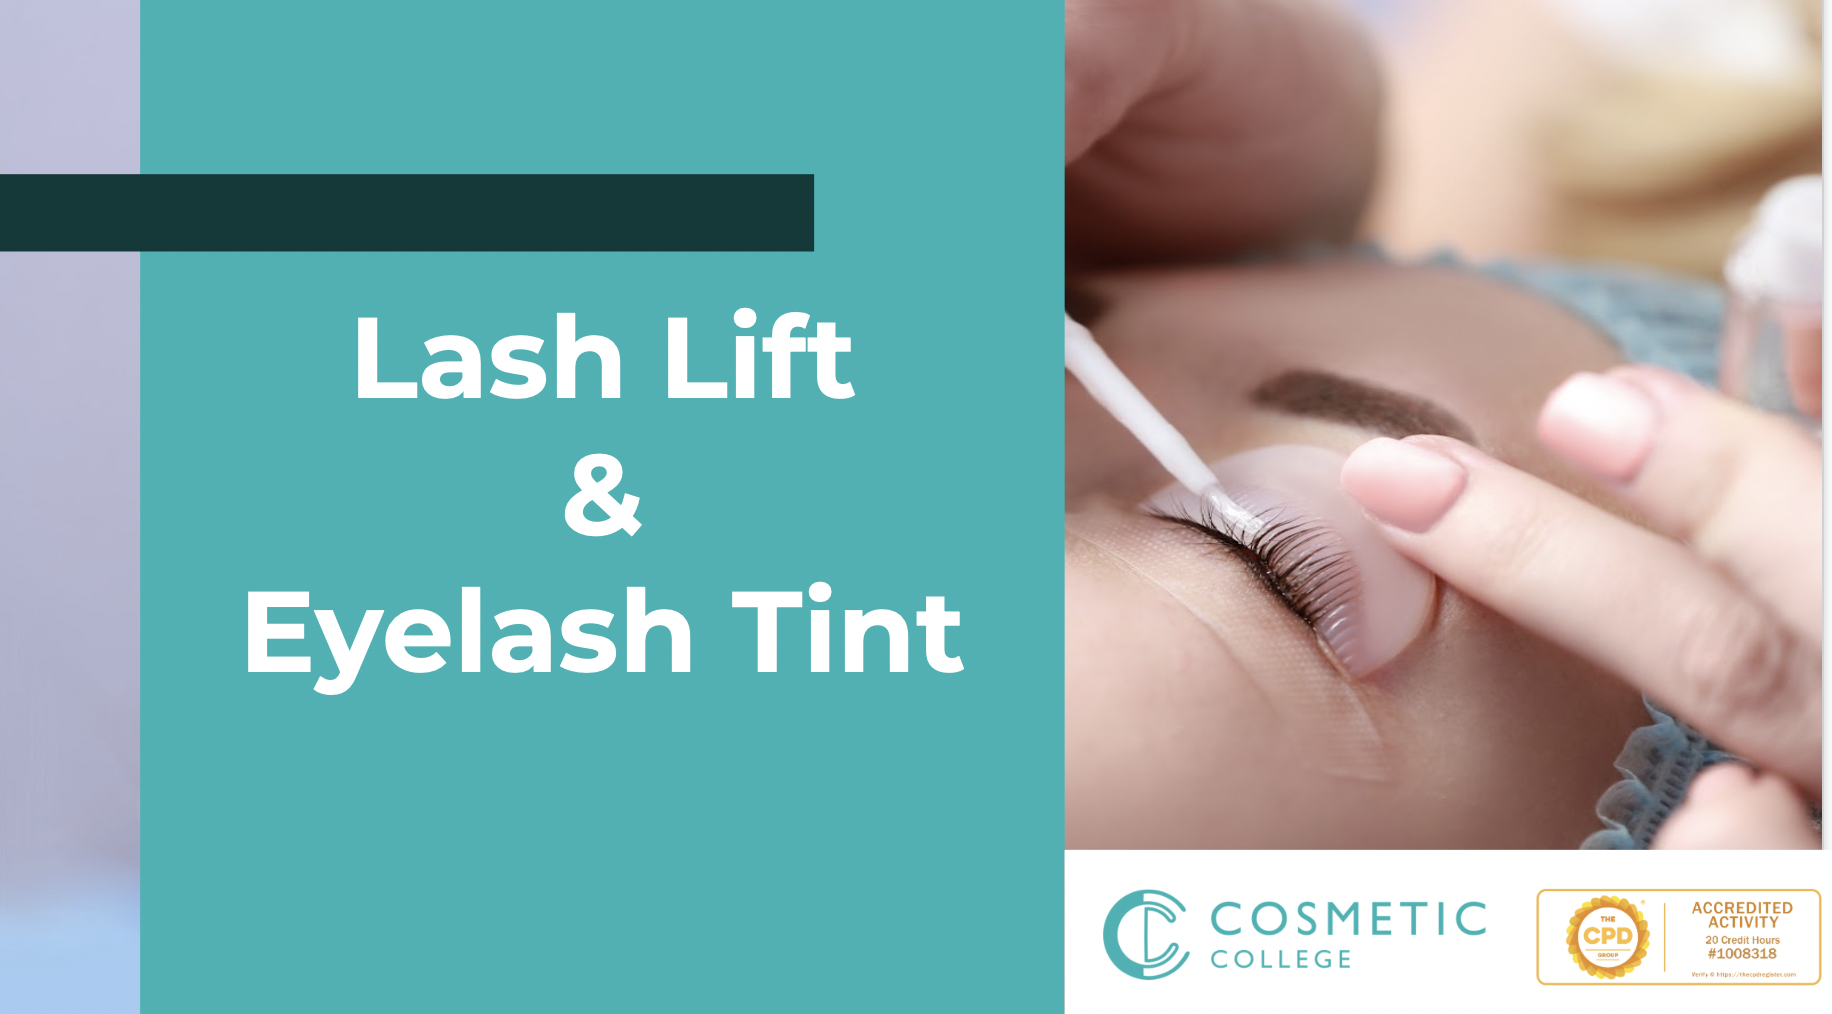 Online Lash Lift & Tint Training Course